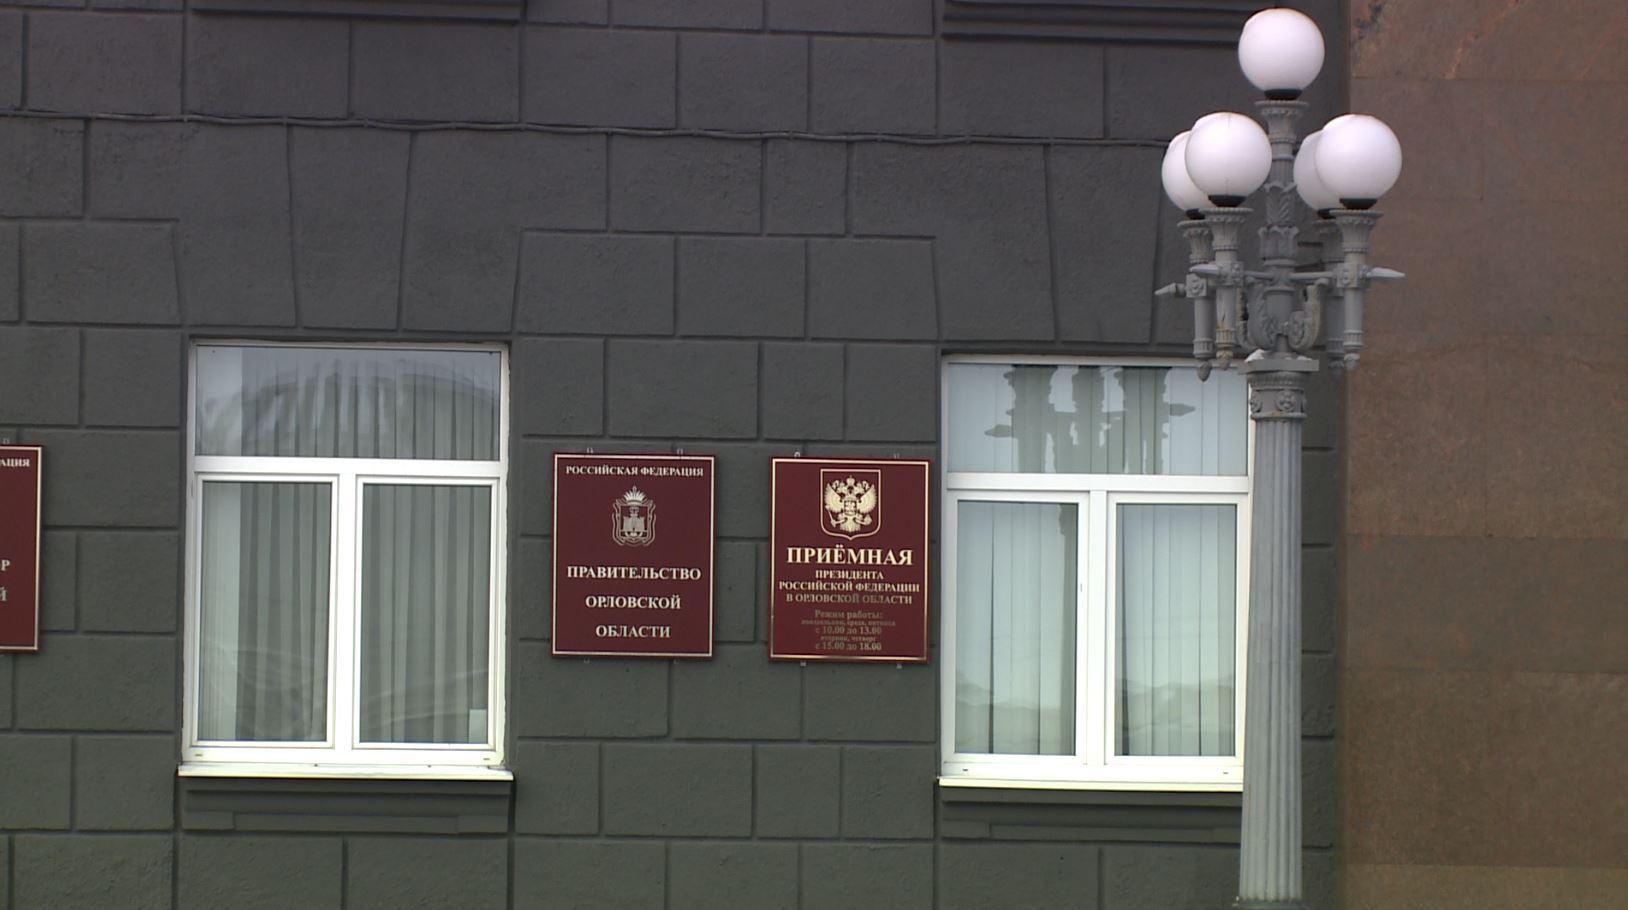 Правительство Орловской области поздравило орловчан с Международным днем кооперации